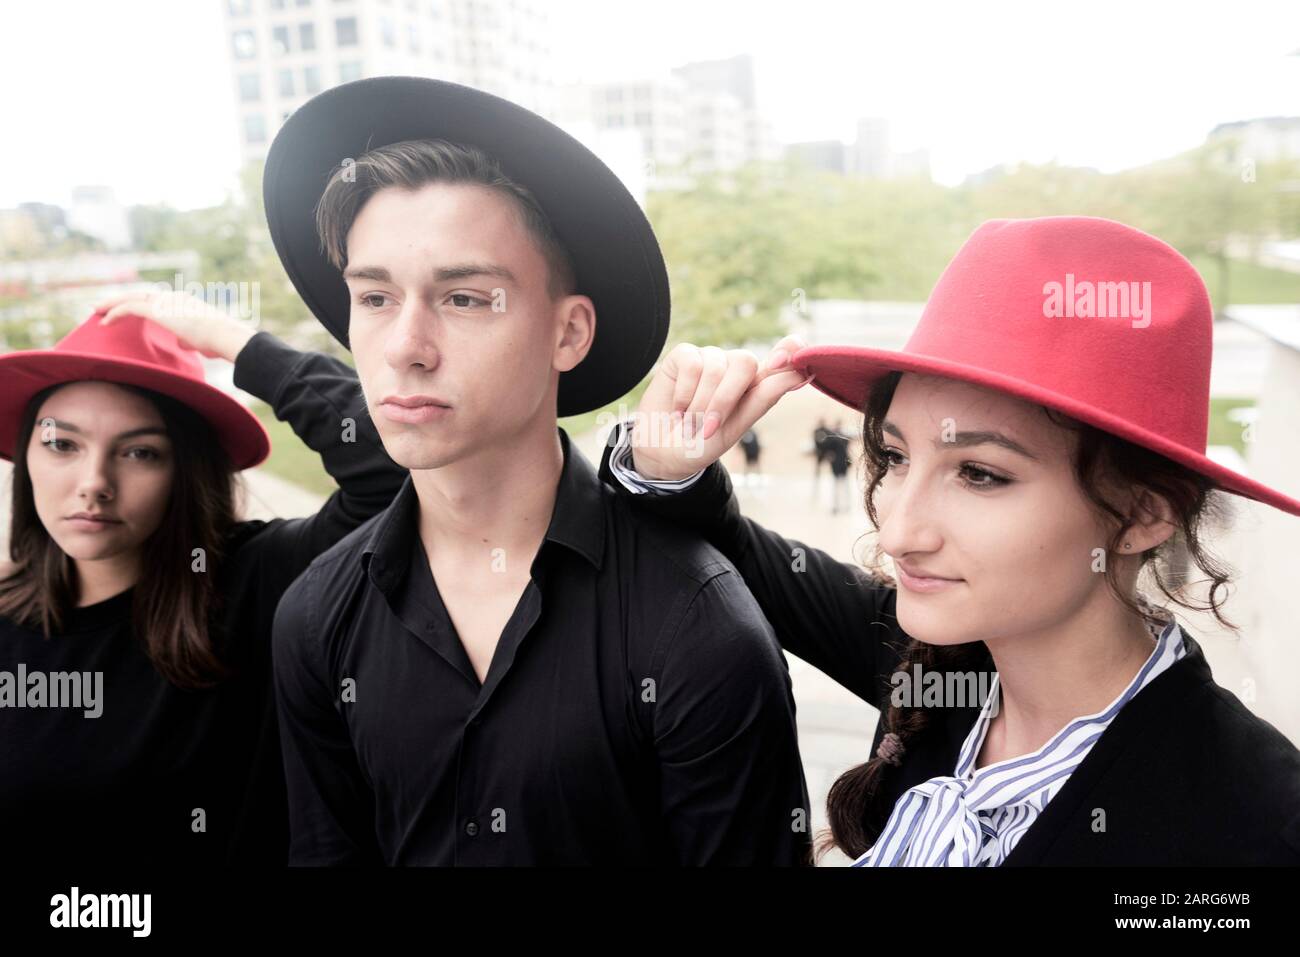 Mann und zwei Frauen tragen Hüte. München, Deutschland Stockfotografie -  Alamy